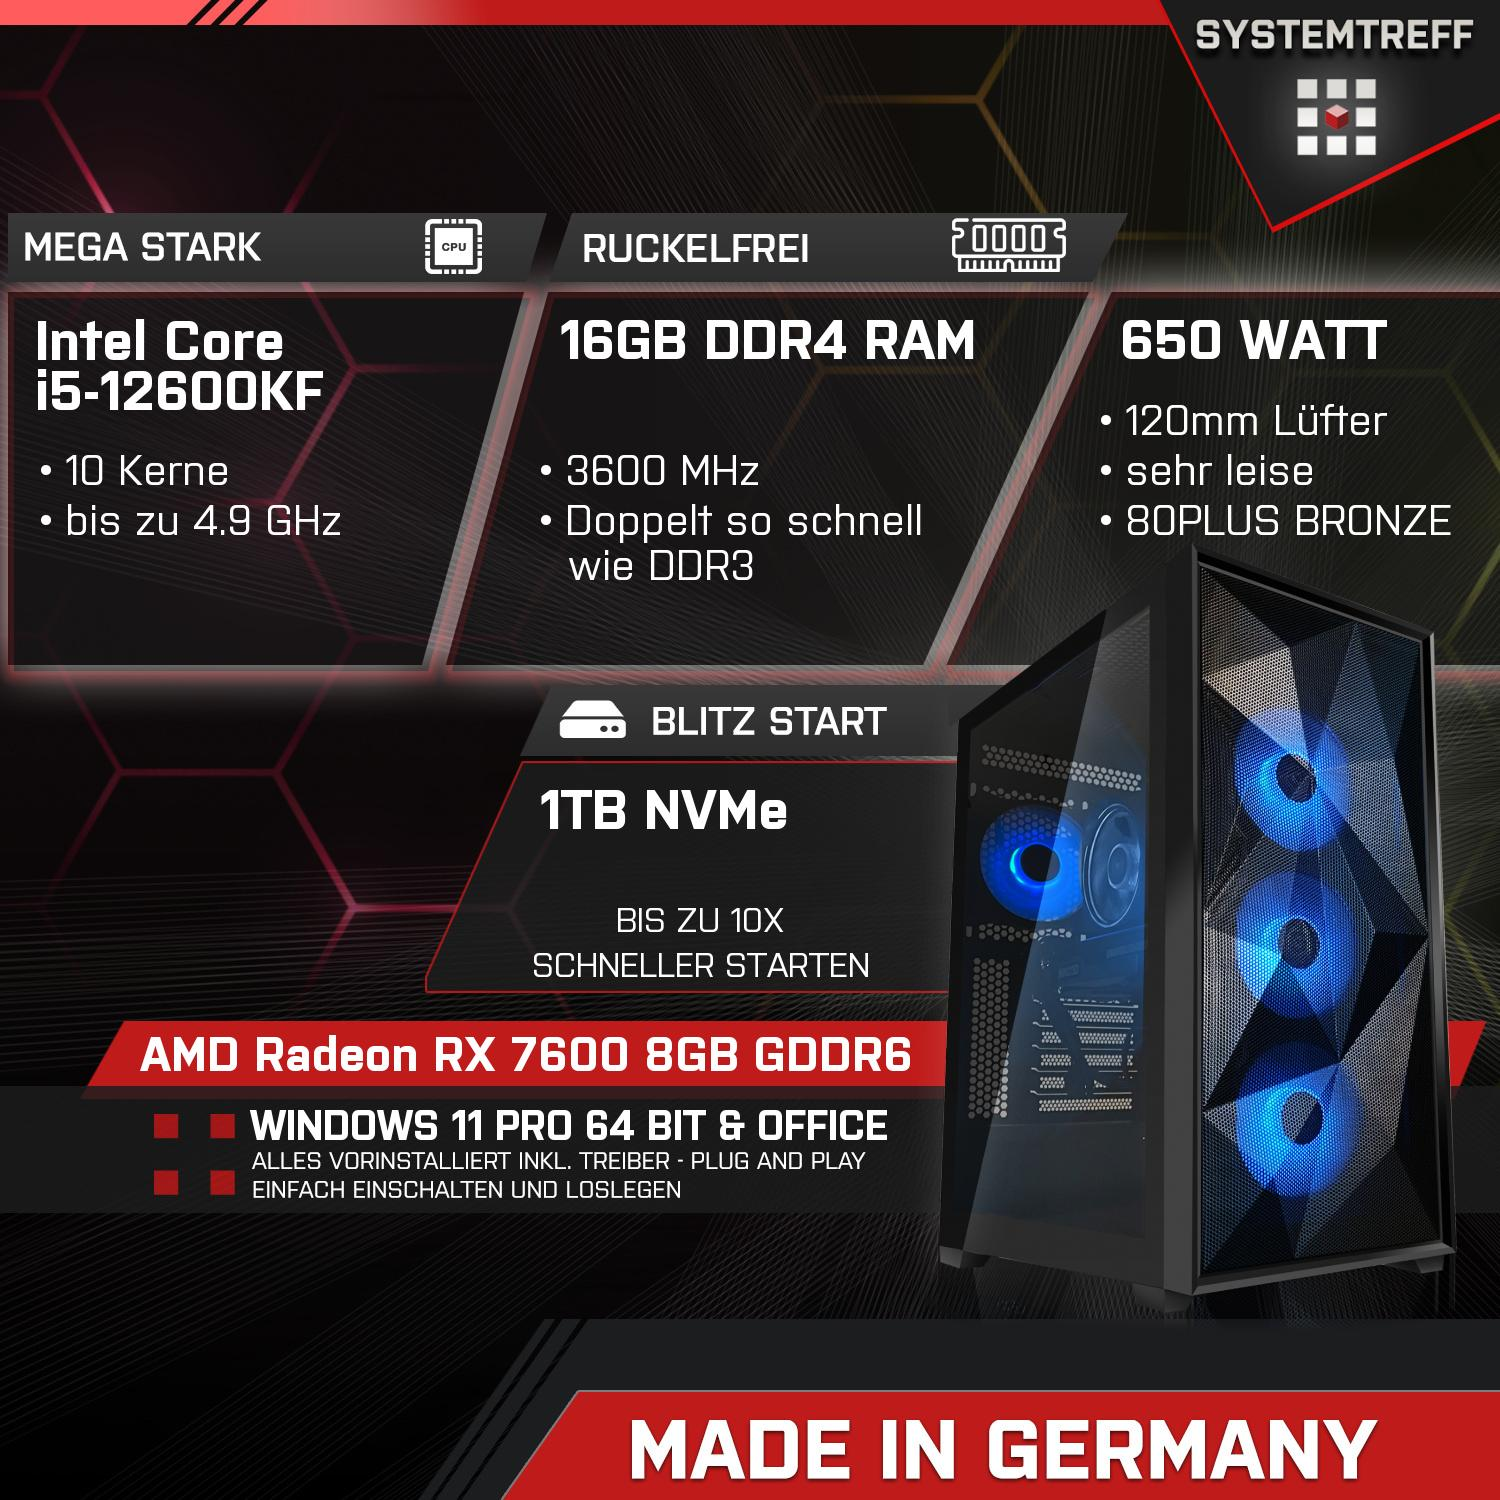 SYSTEMTREFF Gaming Komplett Intel 8 GB mSSD, GB GB Prozessor, mit PC 1000 Core AMD 7600 RAM, Radeon i5-12600KF, 8GB RX GDDR6, 16 Komplett i5-12600KF